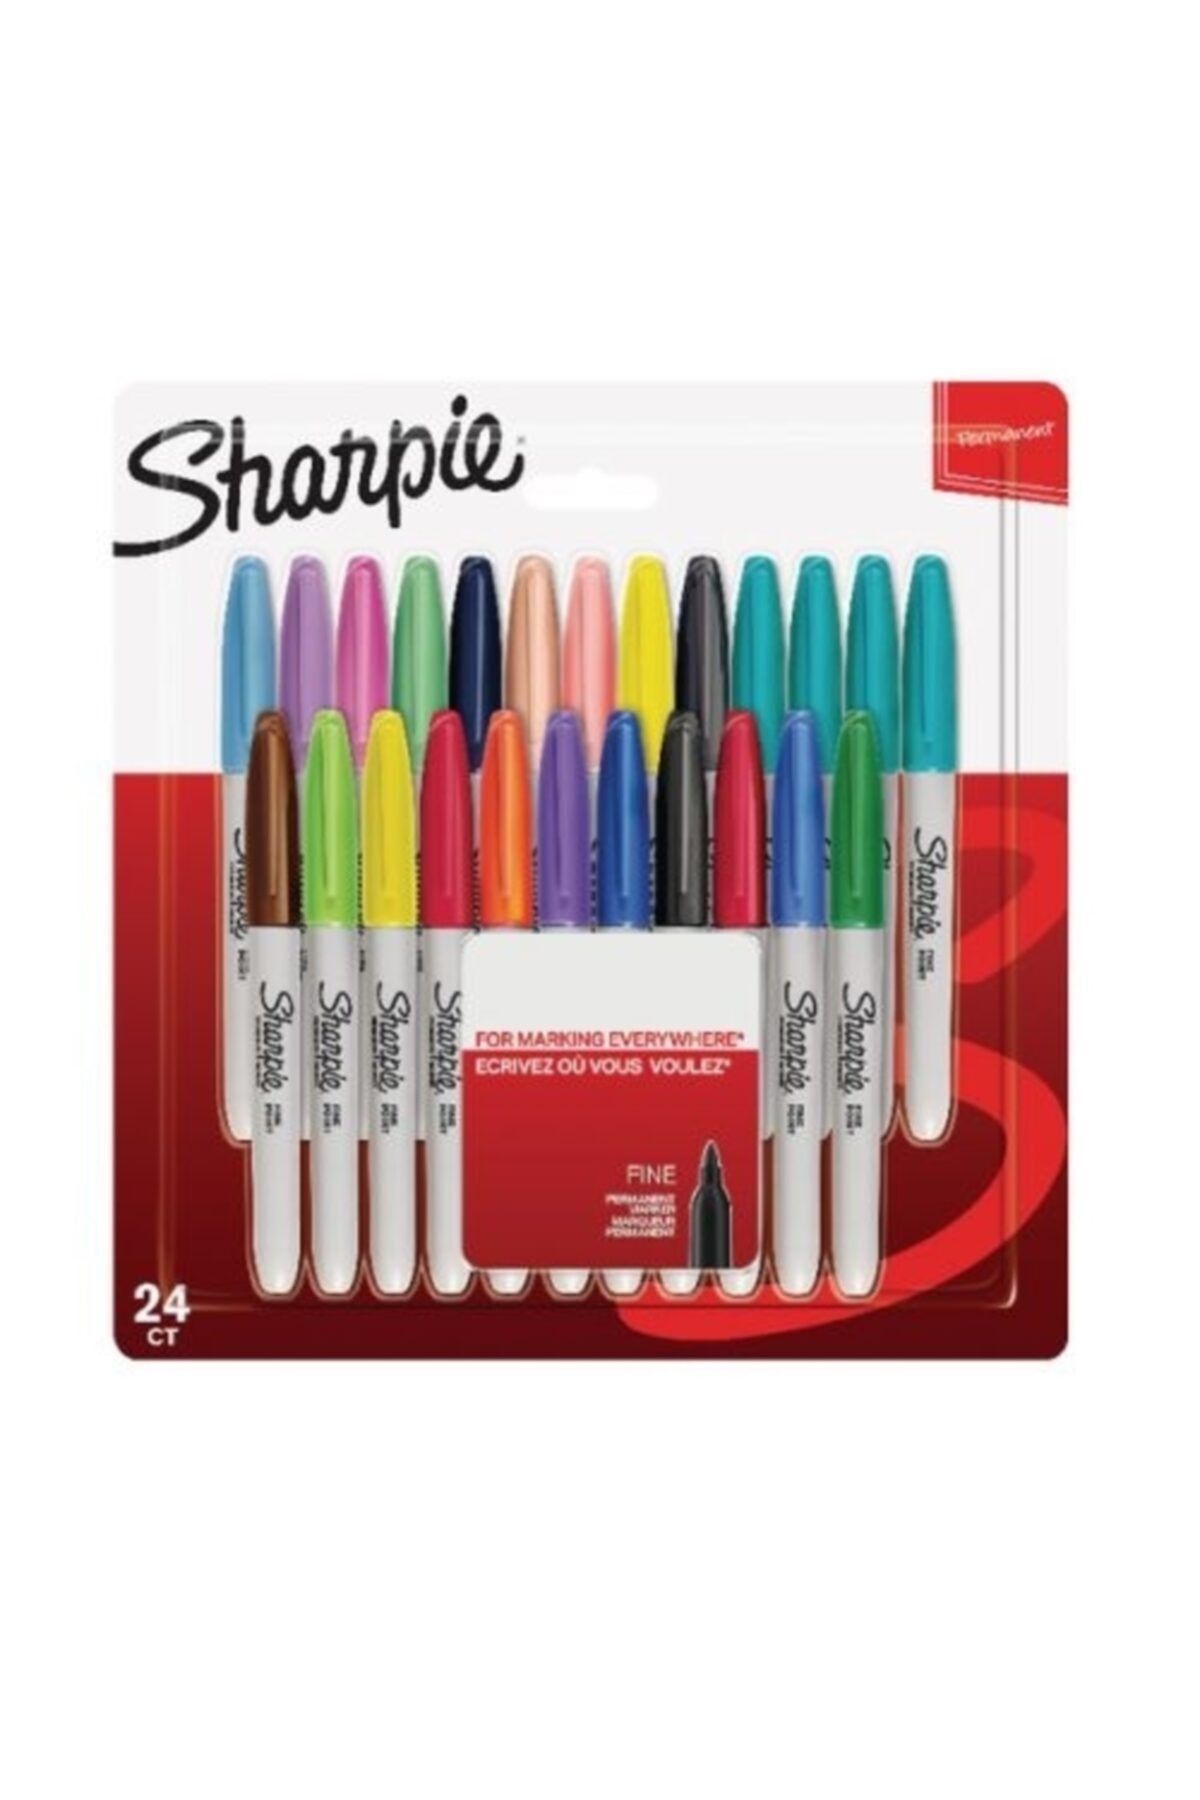 Sharpie 24 Lü Karışık Renk Permanent Markör Fıne - Keçeli Kalem